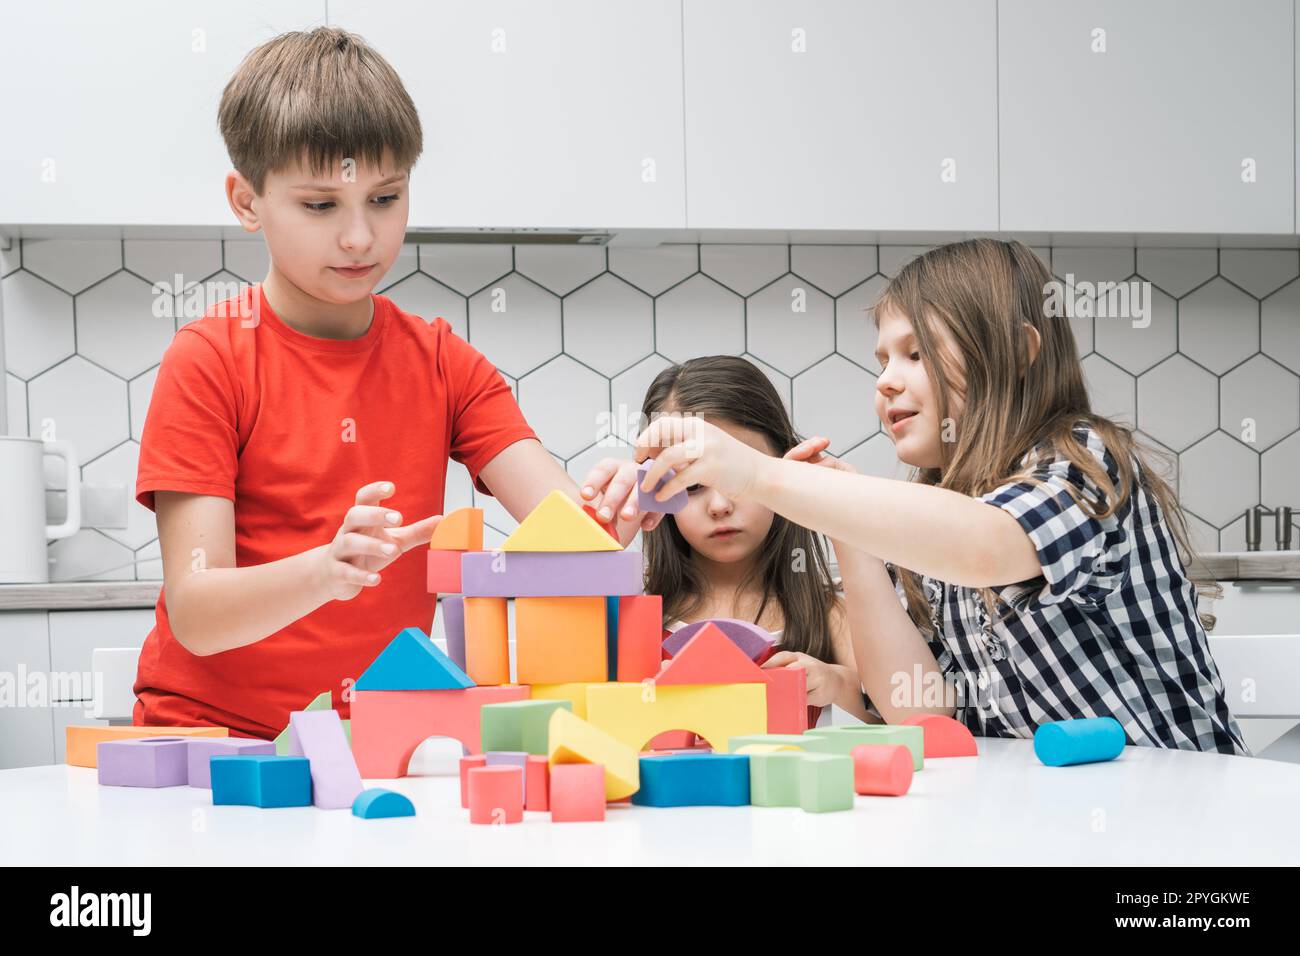 Niños jugando con bloques de construcción e imágenes alta resolución - Alamy